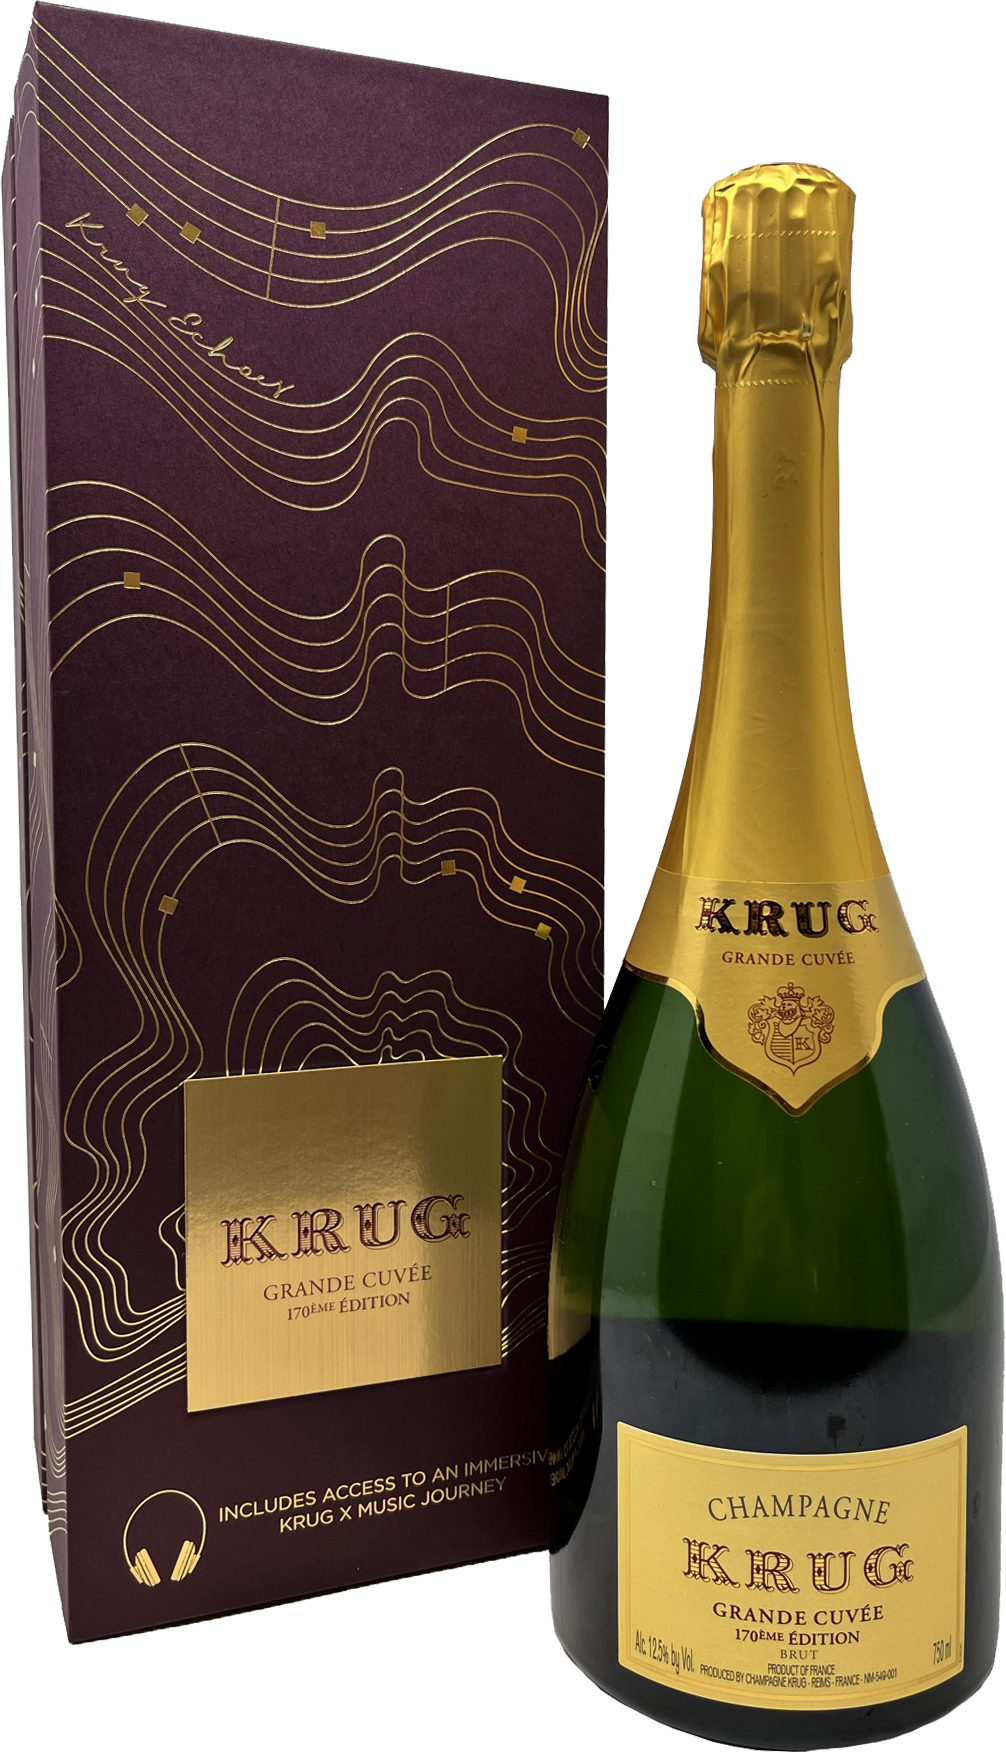 Krug Champagne Brut Grande Cuvee 171ÈME ÉDITION – Wine Chateau